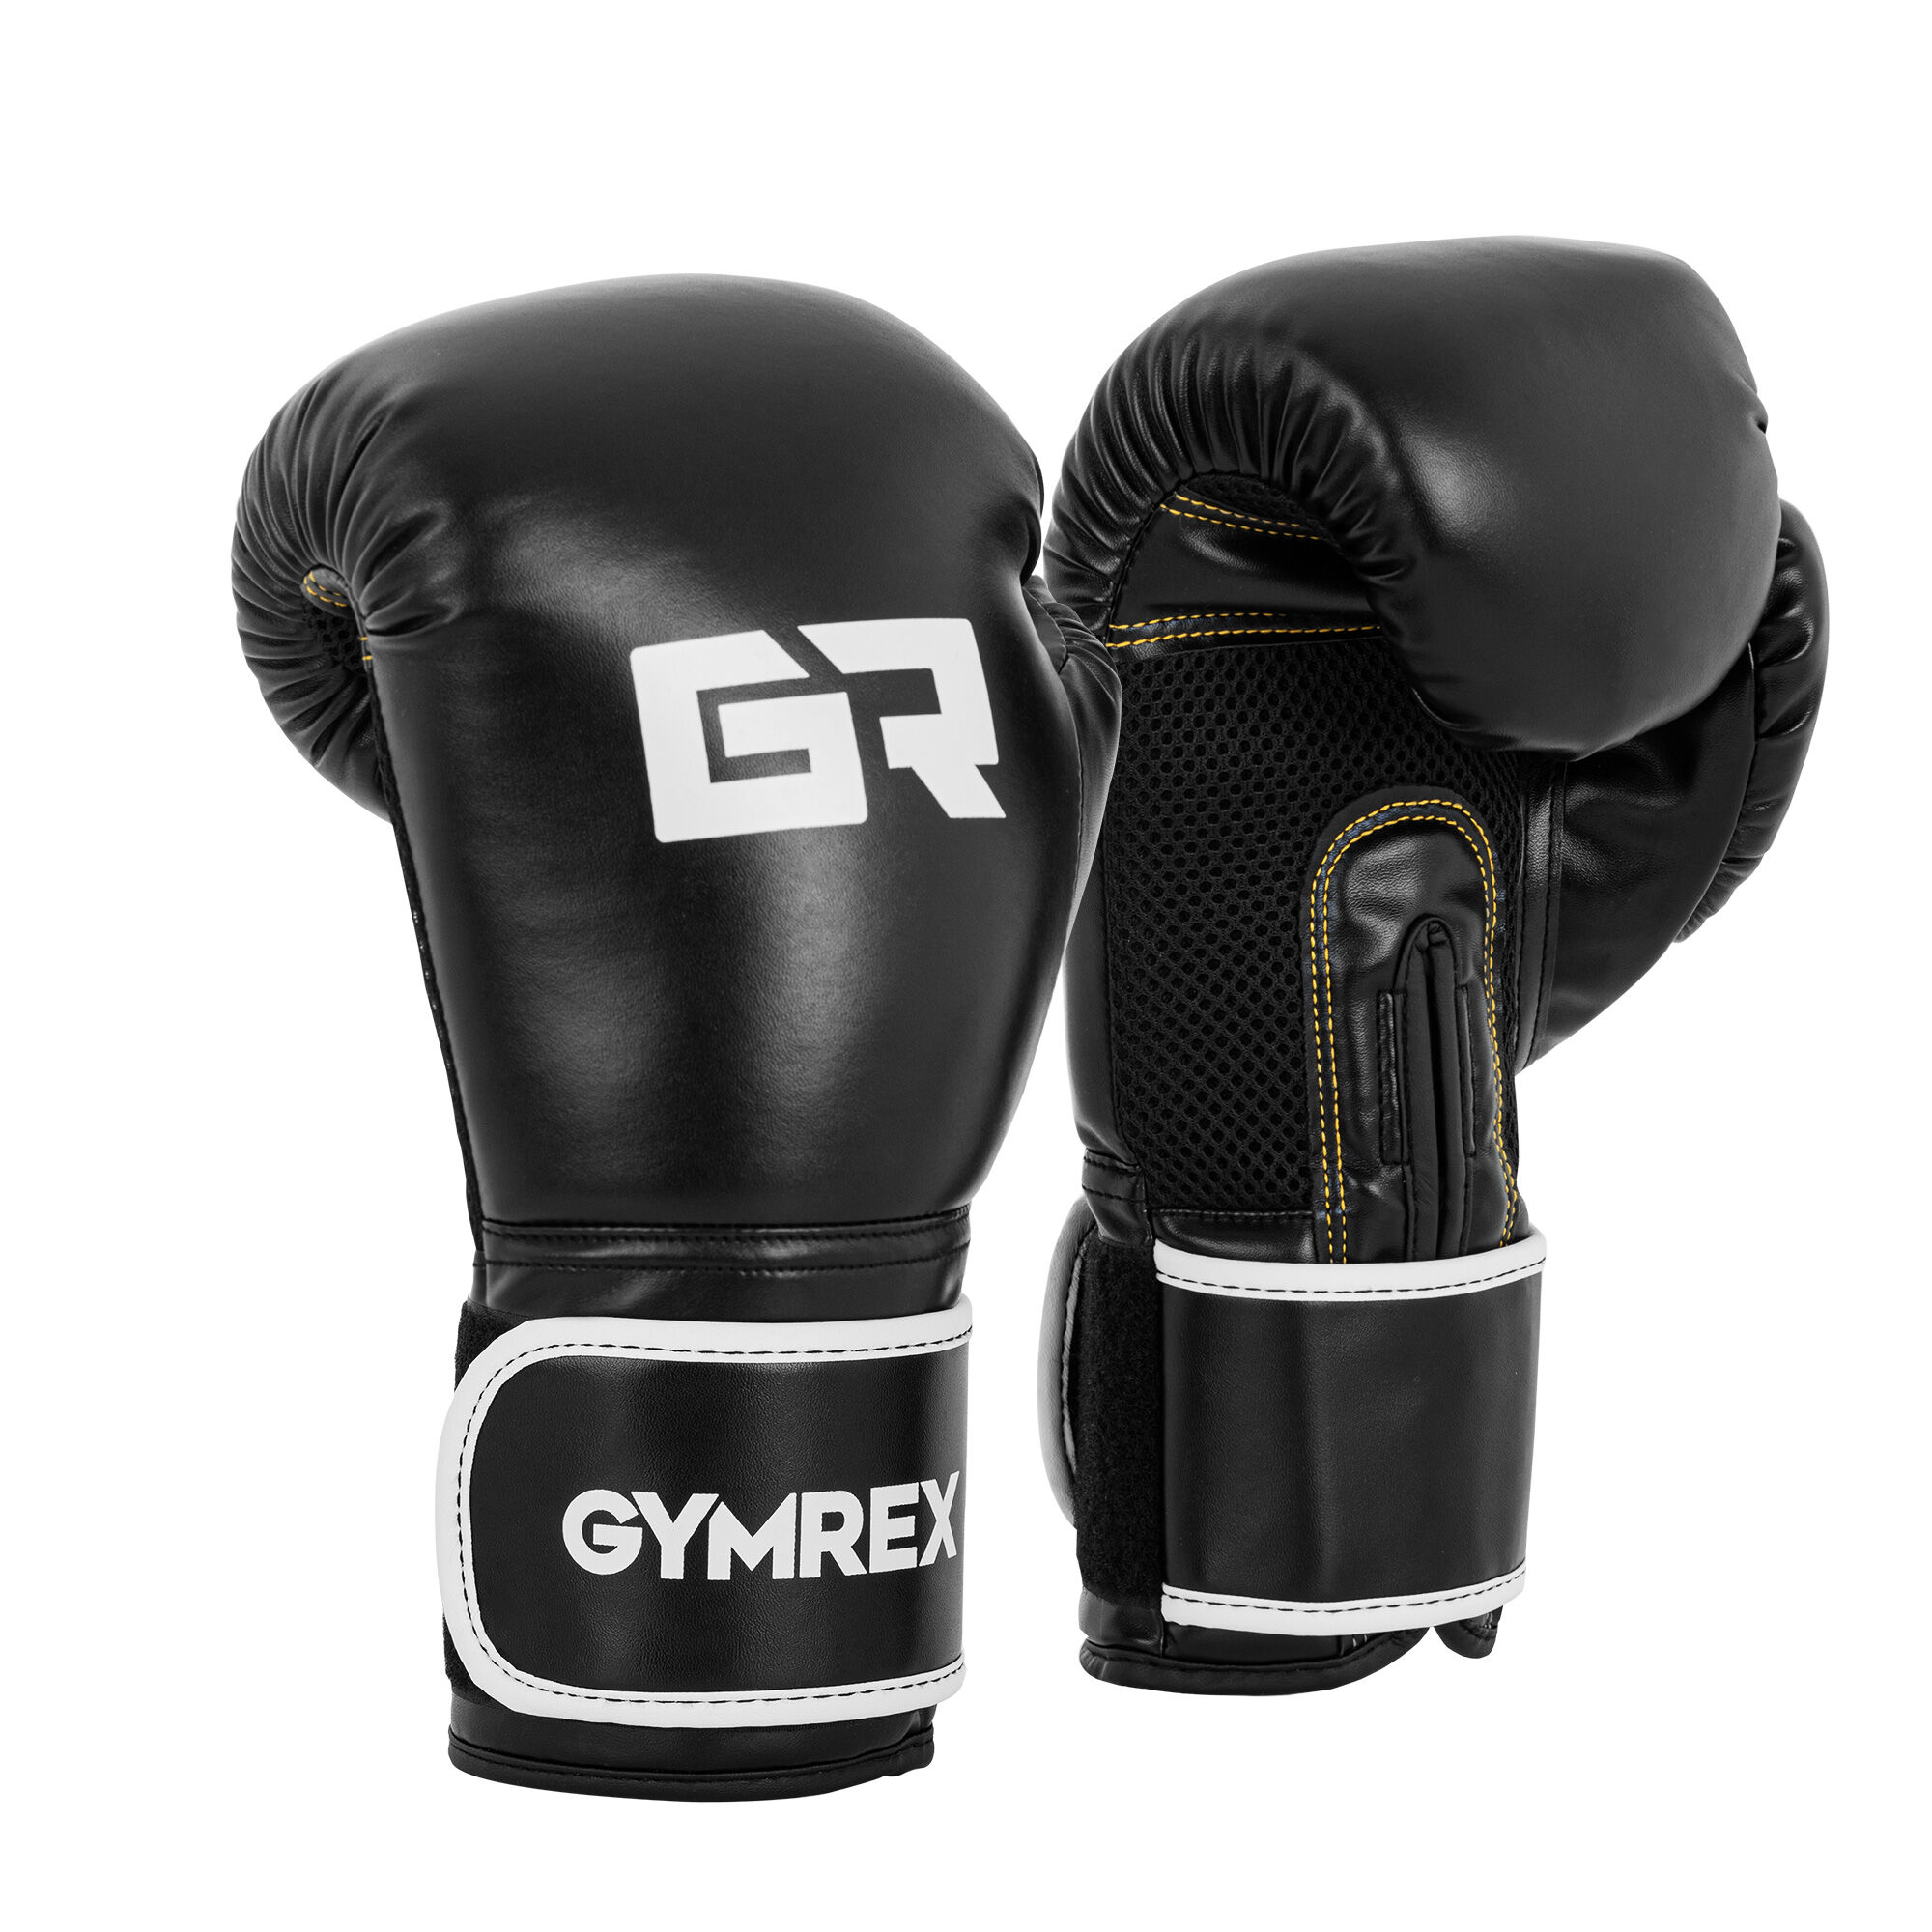 Gymrex Boxerské rukavice - 12 oz - síťovina uvnitř - černé GR-BG 12B